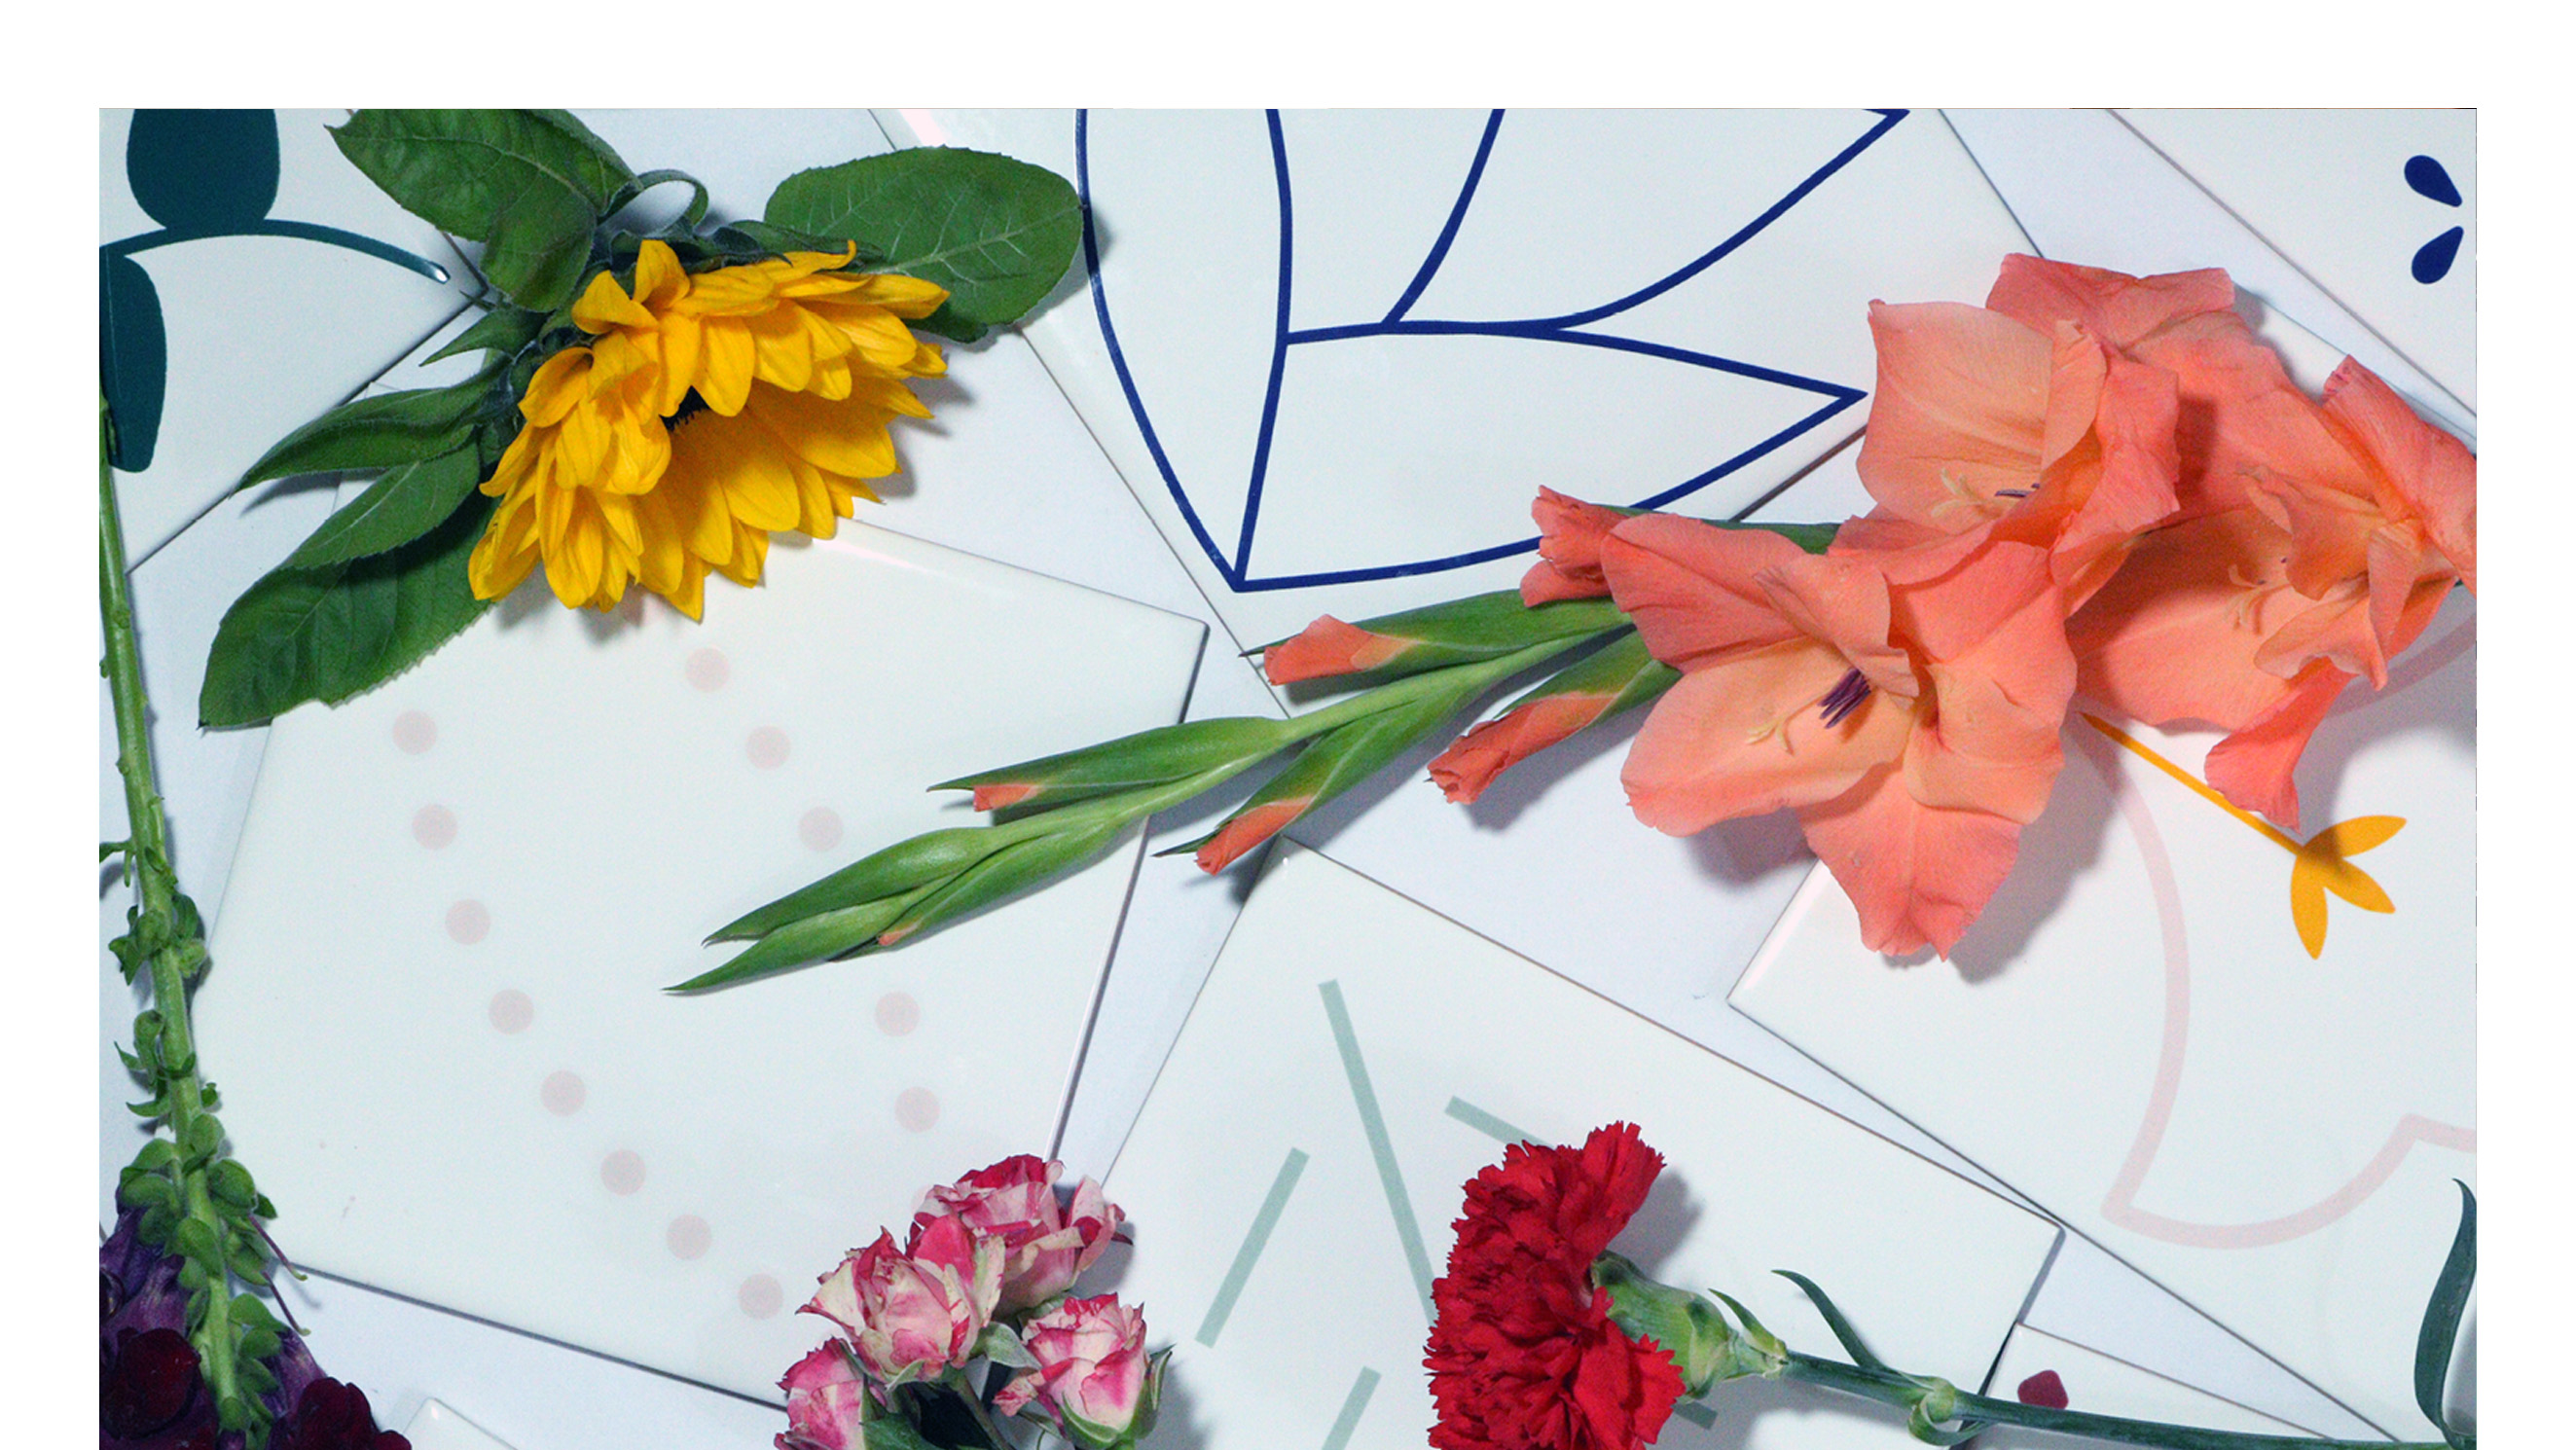 Azulejos decorados com flores | Modelos da Lurca com motivos florais